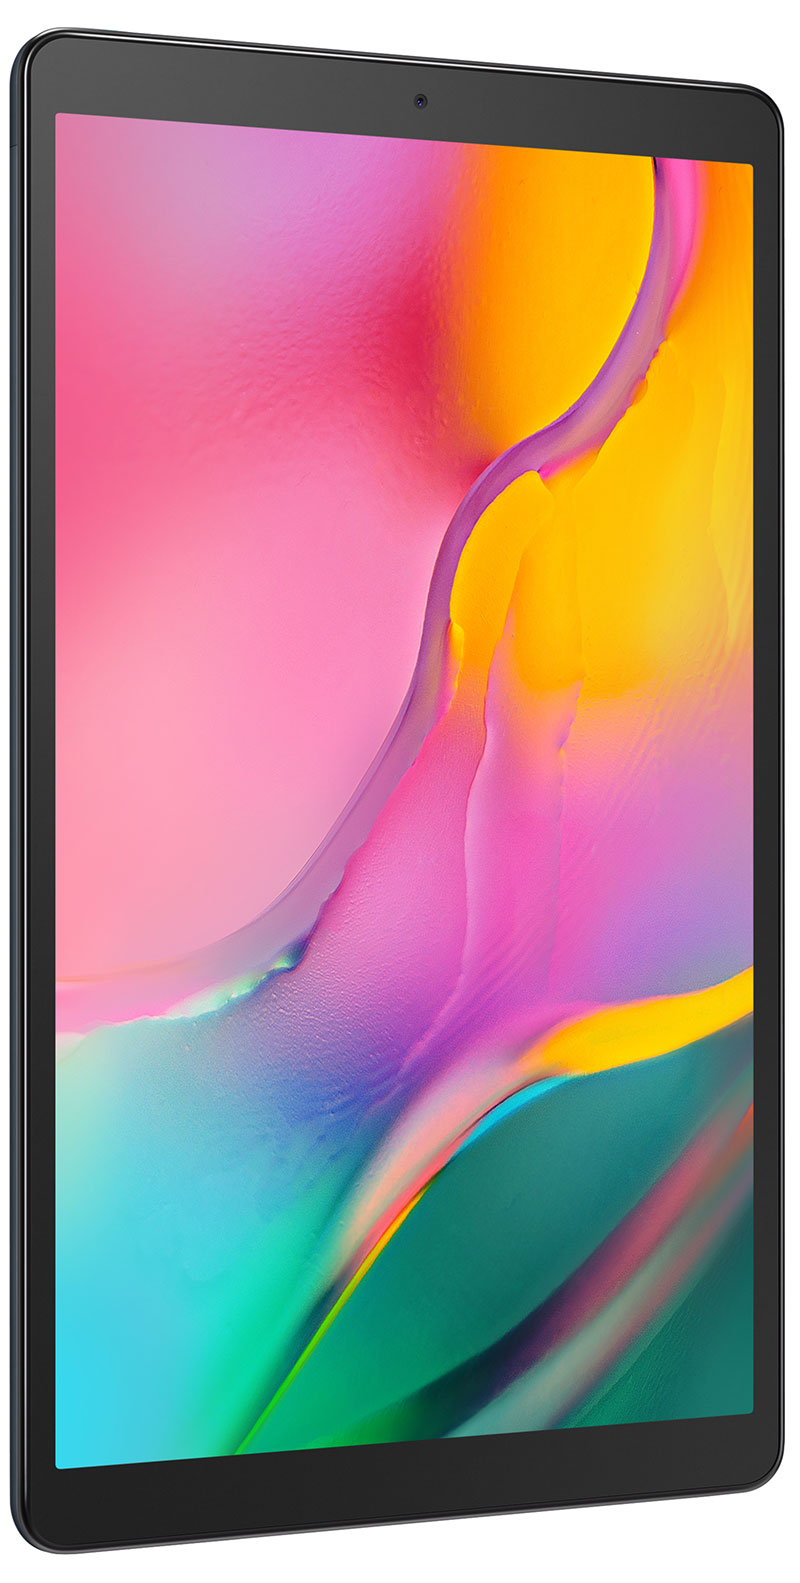 Samsung Galaxy Tab A 10.1 2019 4G noir 32Go